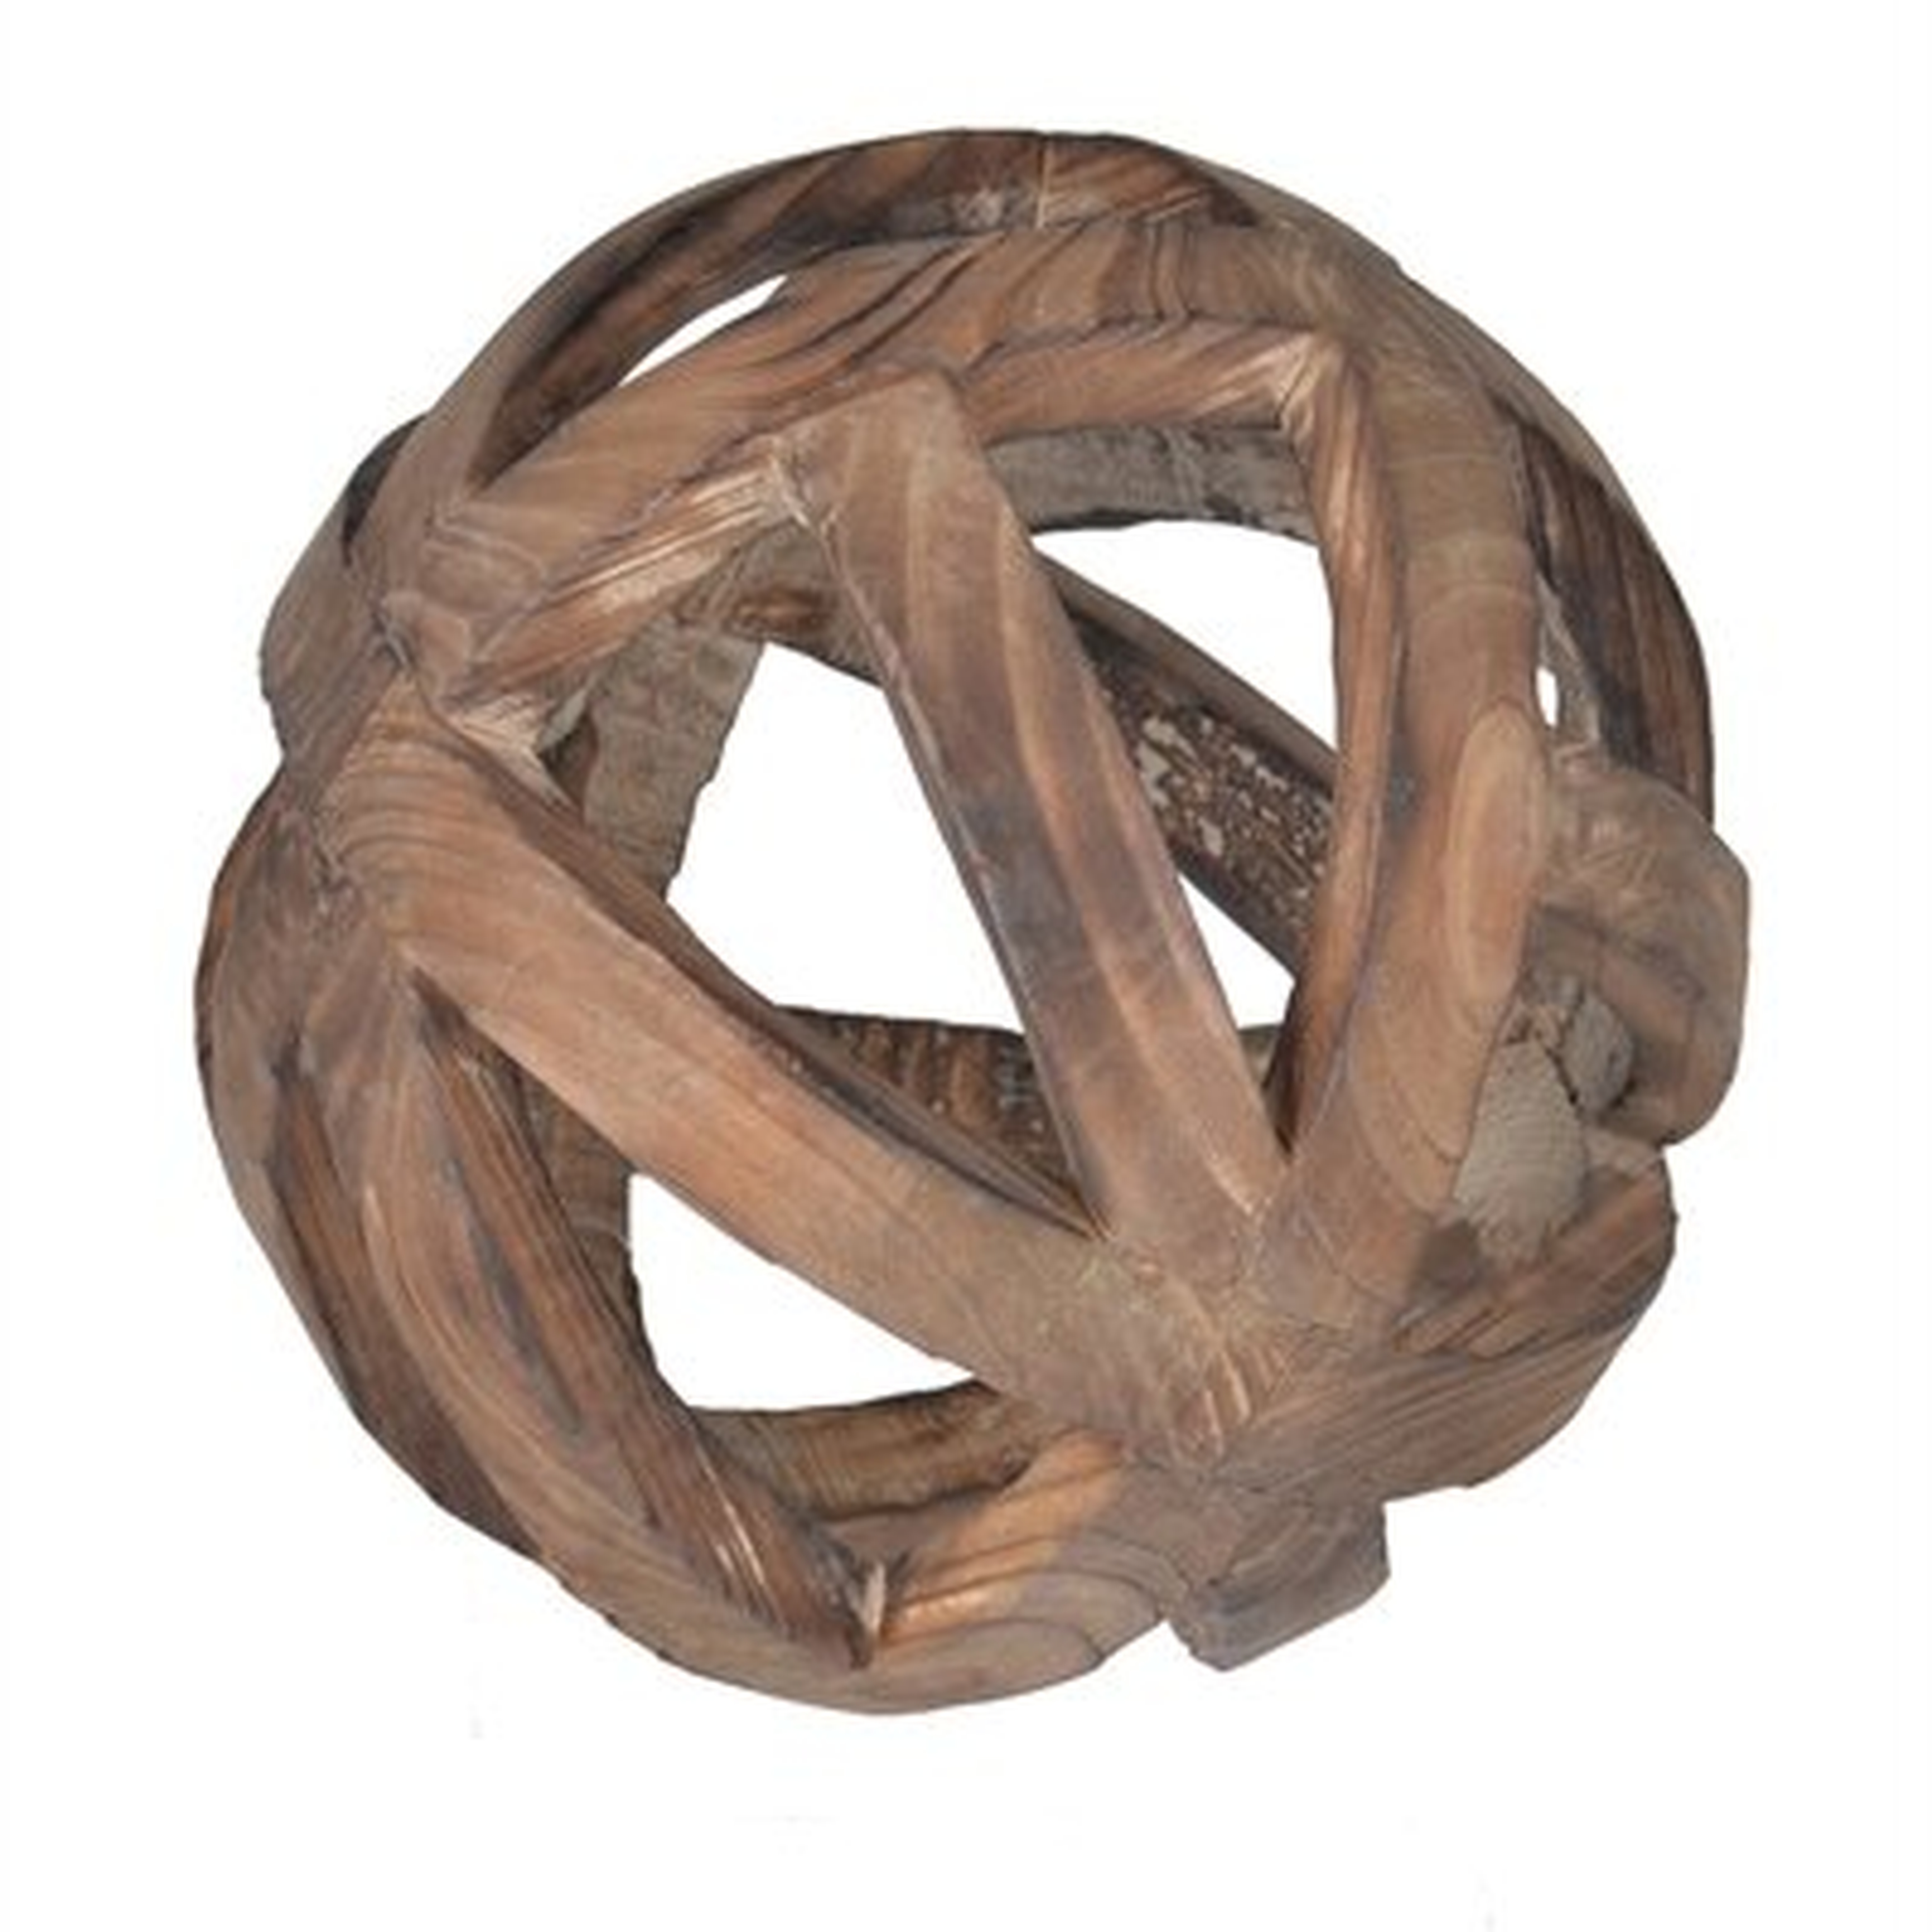 Mcmakin Natural Decorative Wood Ball Sculpture - Wayfair